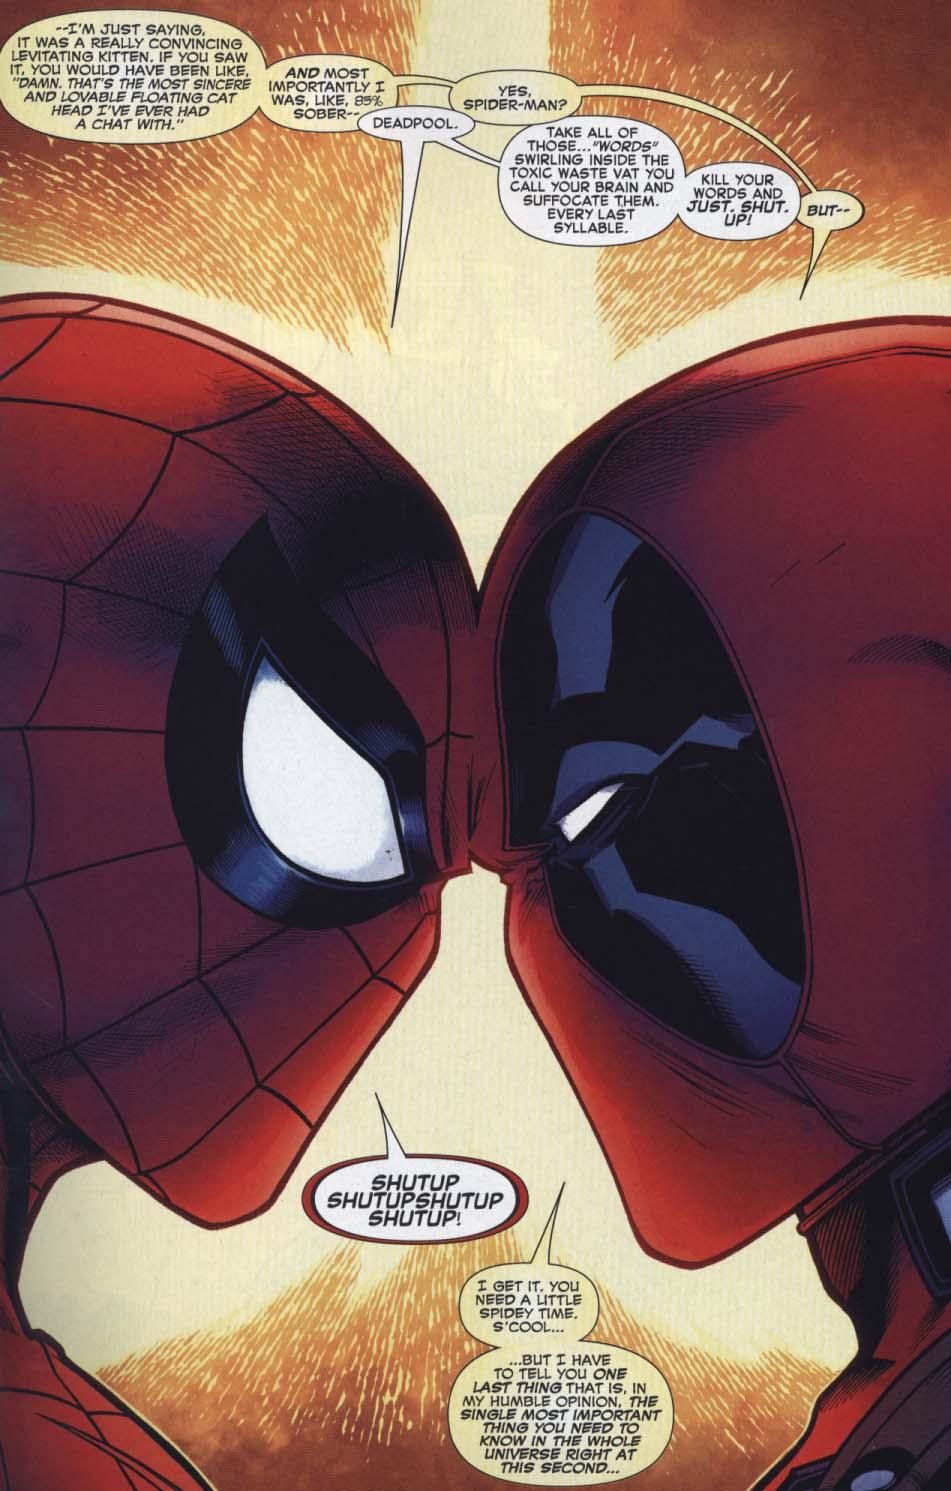 Spider-Man/Deadpool Vol. 1: isn't it Bromantic